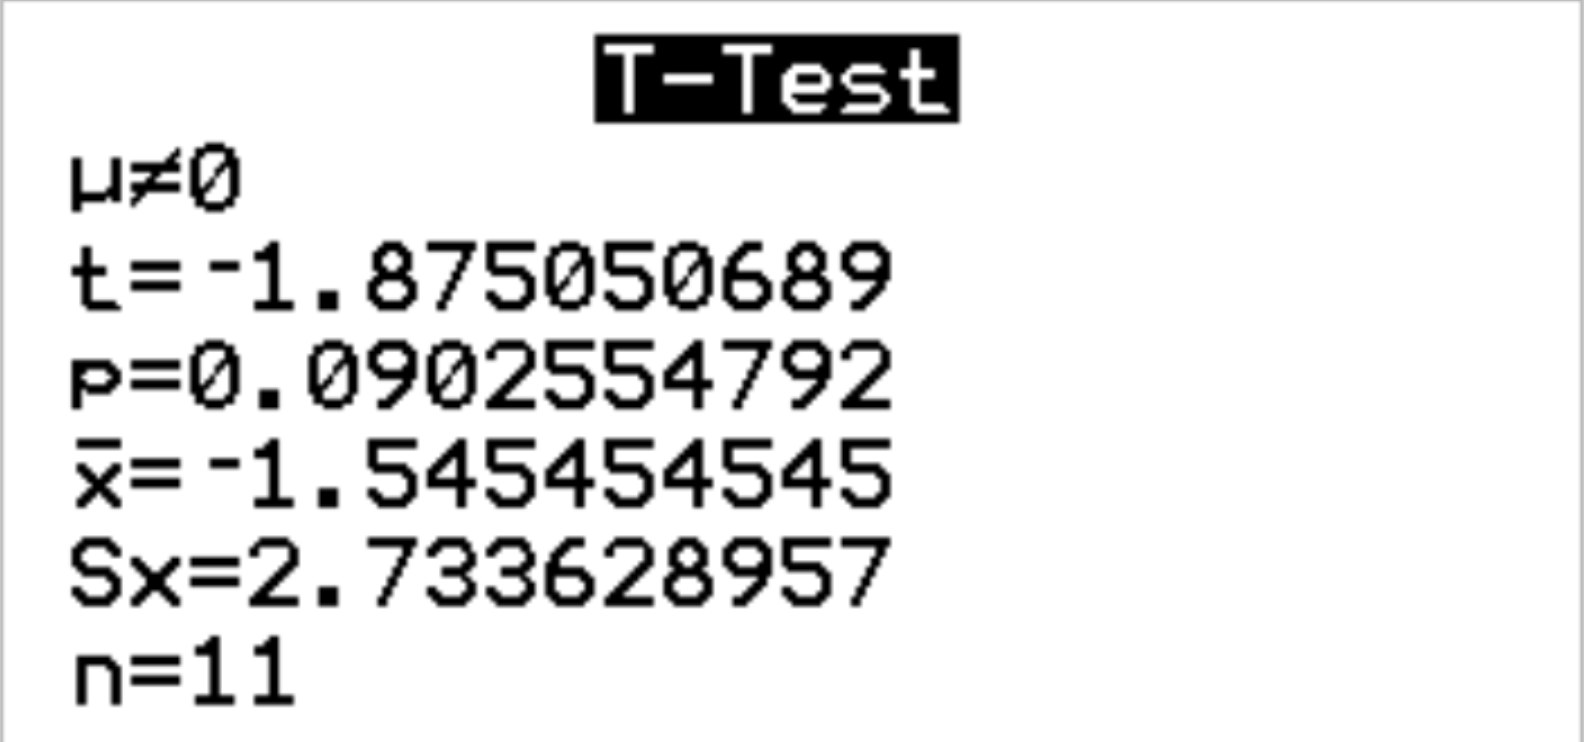 Вывод парного t-критерия на калькуляторе ТИ-84